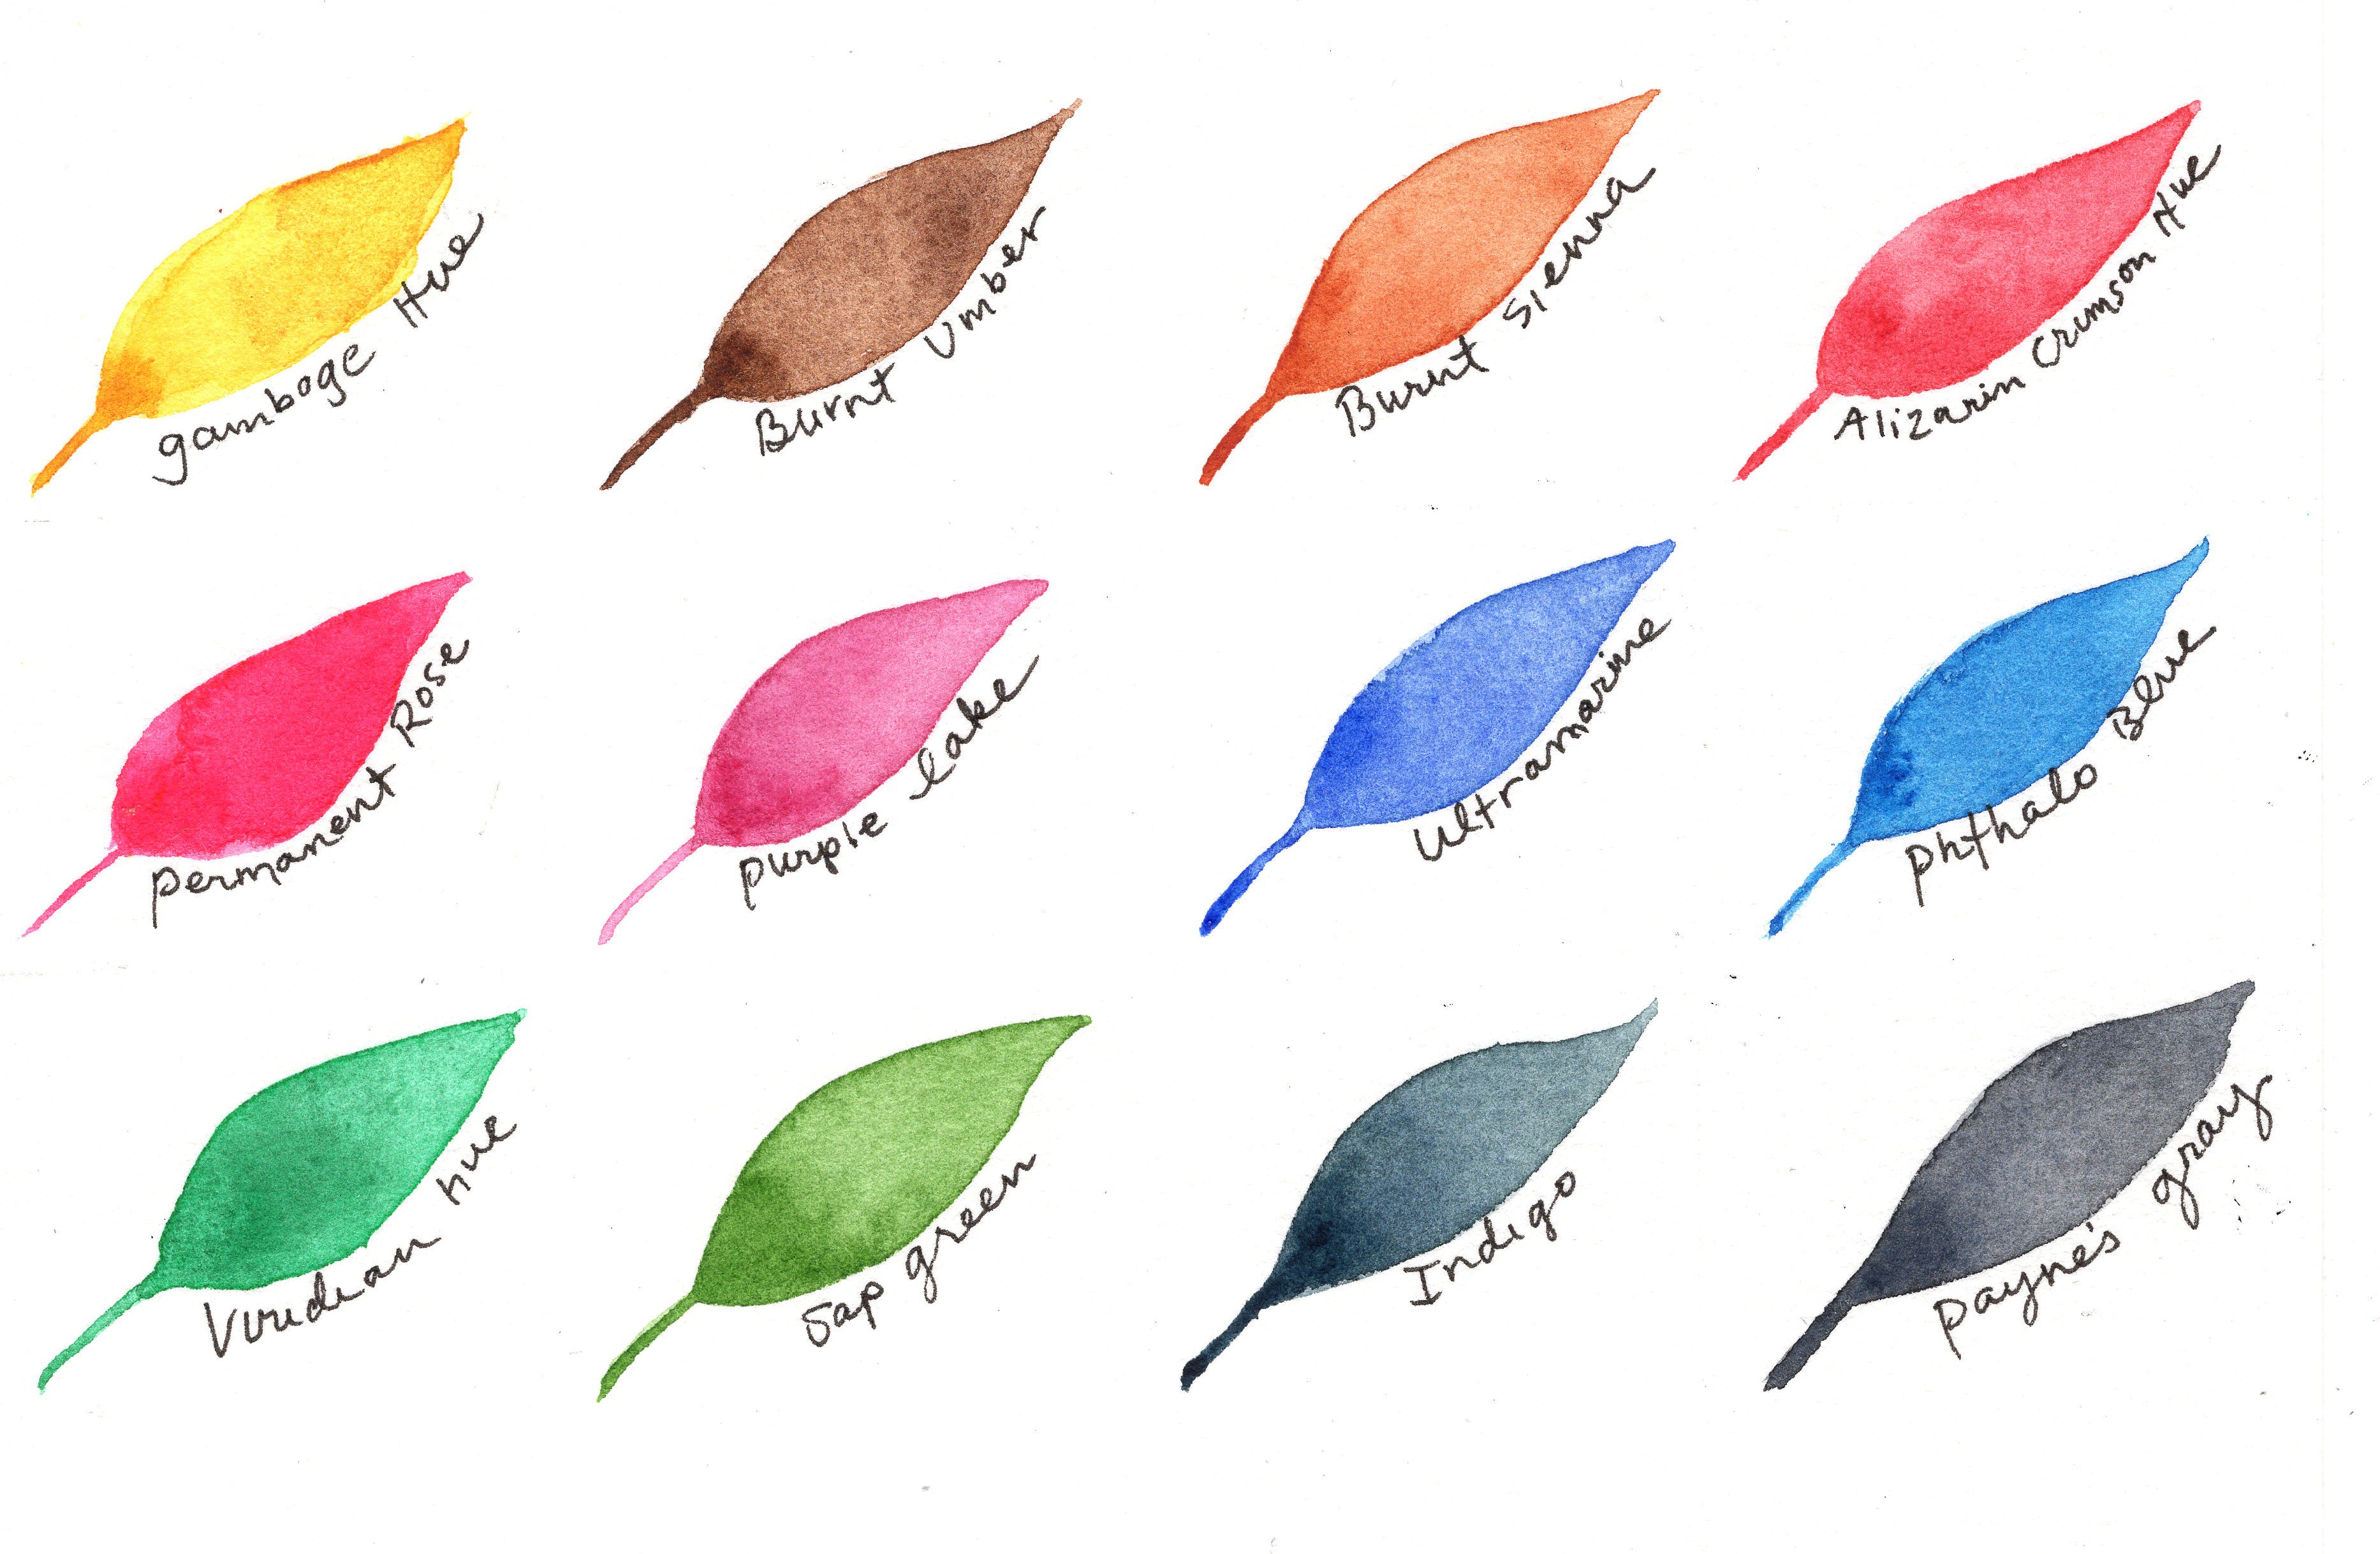 NAC18 – Niji® Artist Crayons 18 Color Set – Yasutomo